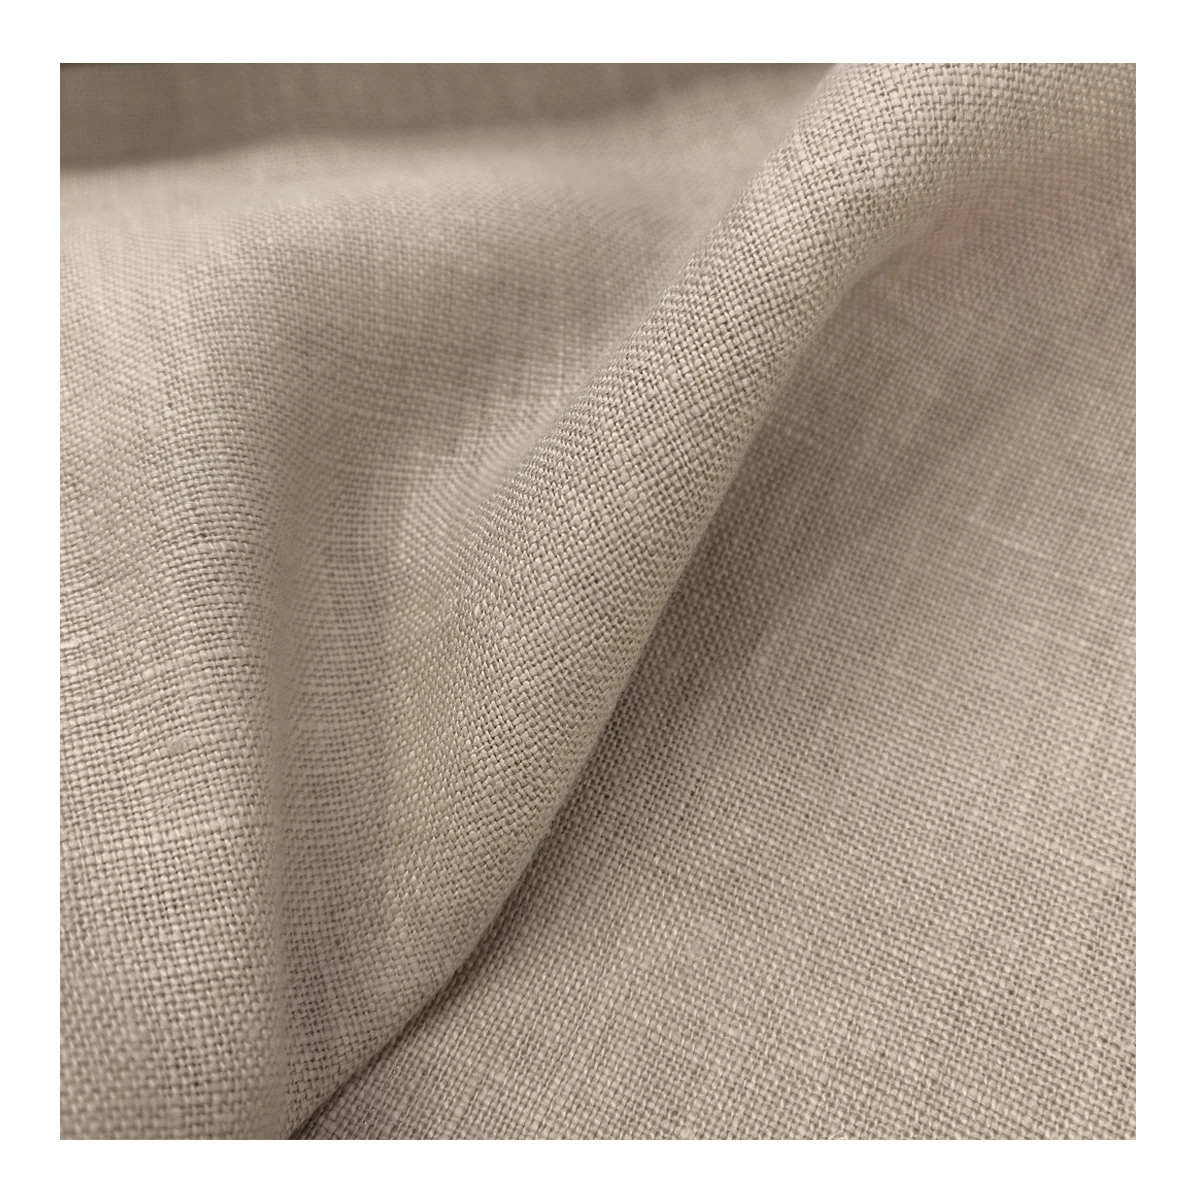 100% льняная ткань, натуральный цвет, мягкая ткань для штор и дивана, обивка, стирка и печать